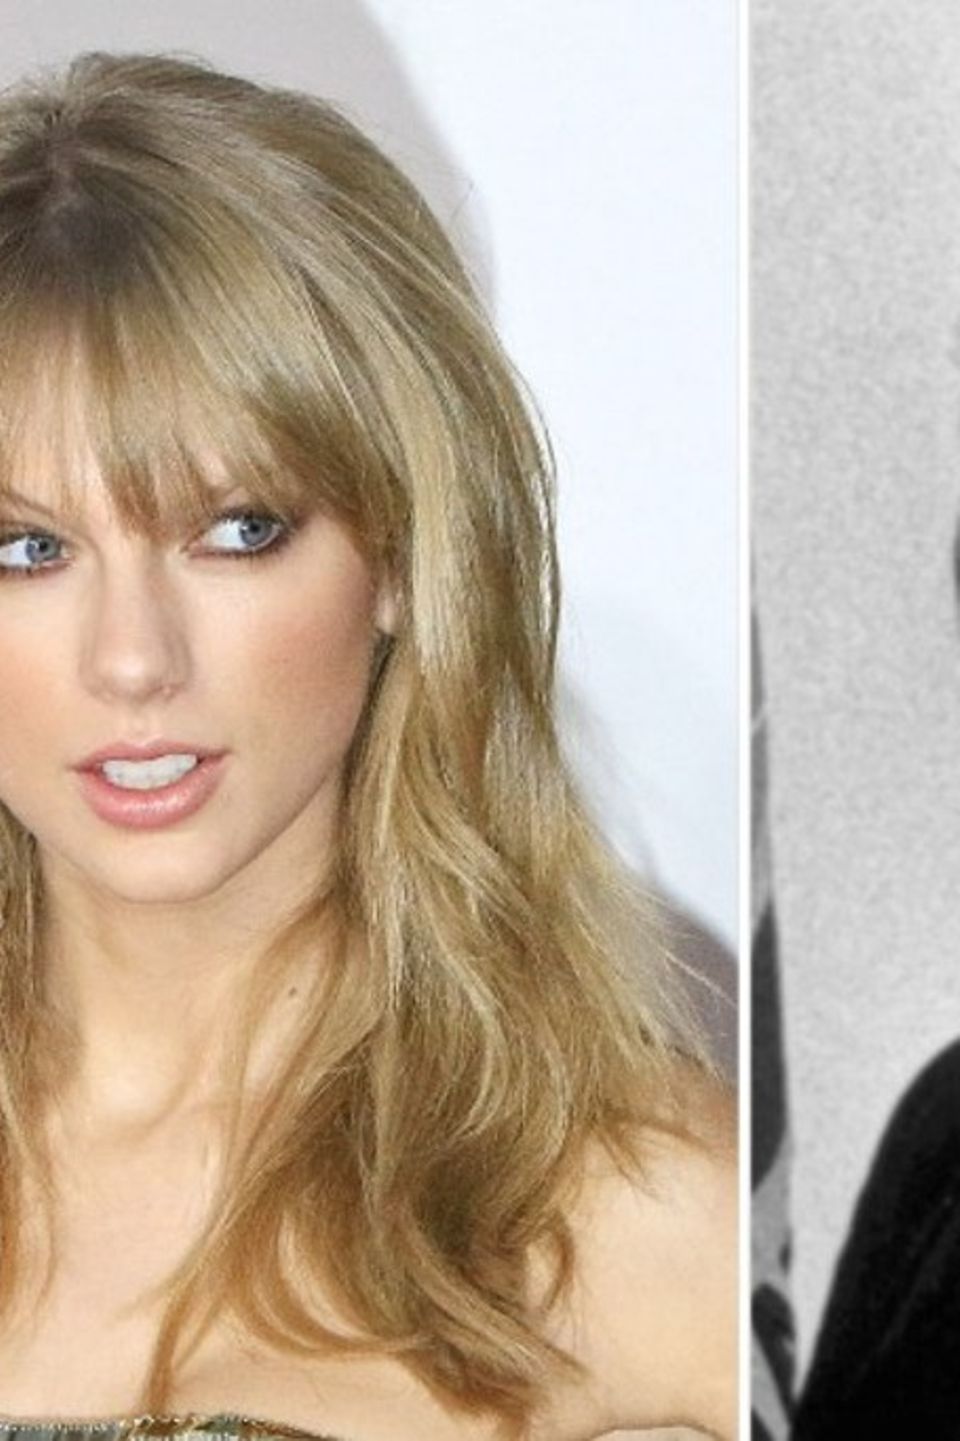 Gleichgezogen hat sie schon - knackt Taylor Swift bald einen jahrzehntealten Rekord von Elvis Presley?